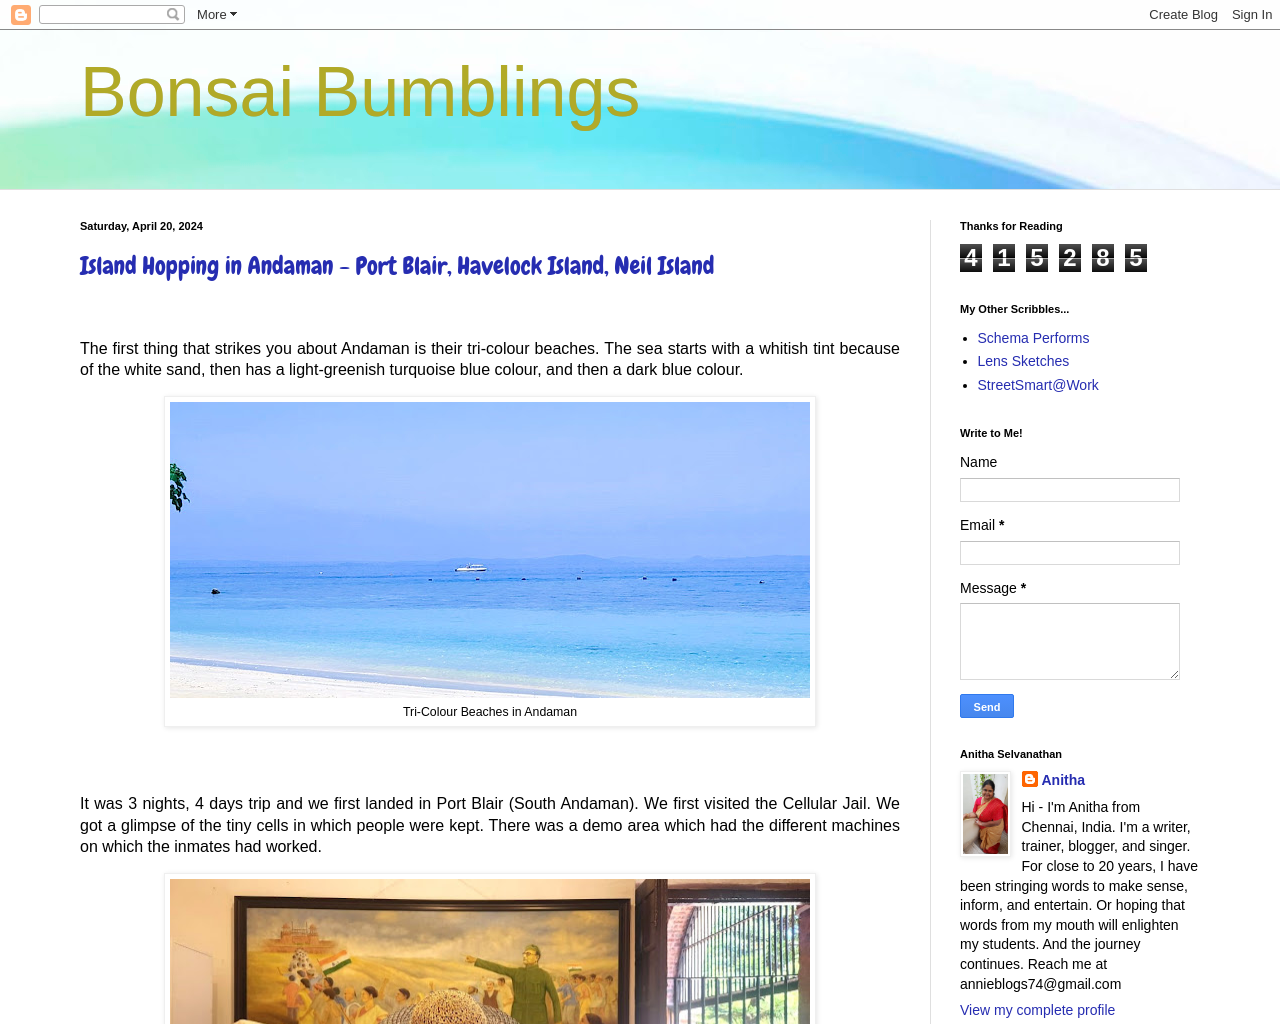 Bonsai Bumblings